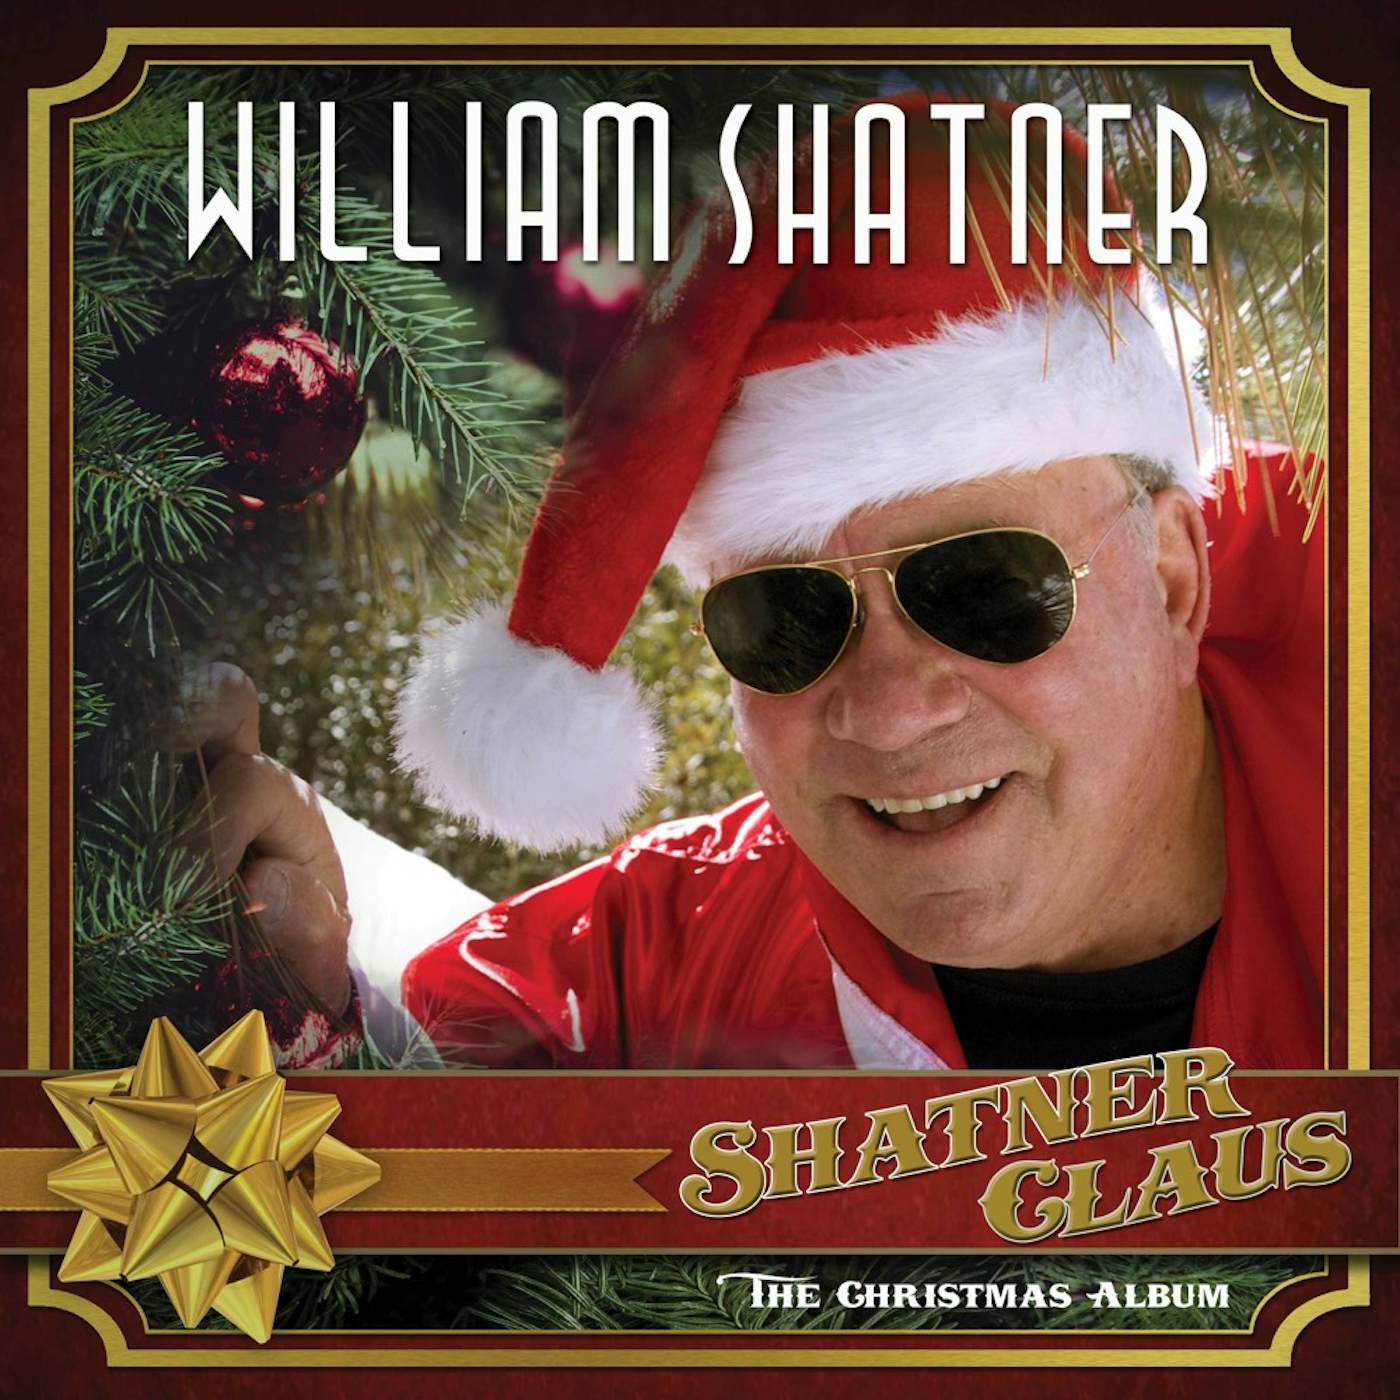 William Shatner Shatner Claus: The Christmas Album Vinyl Record